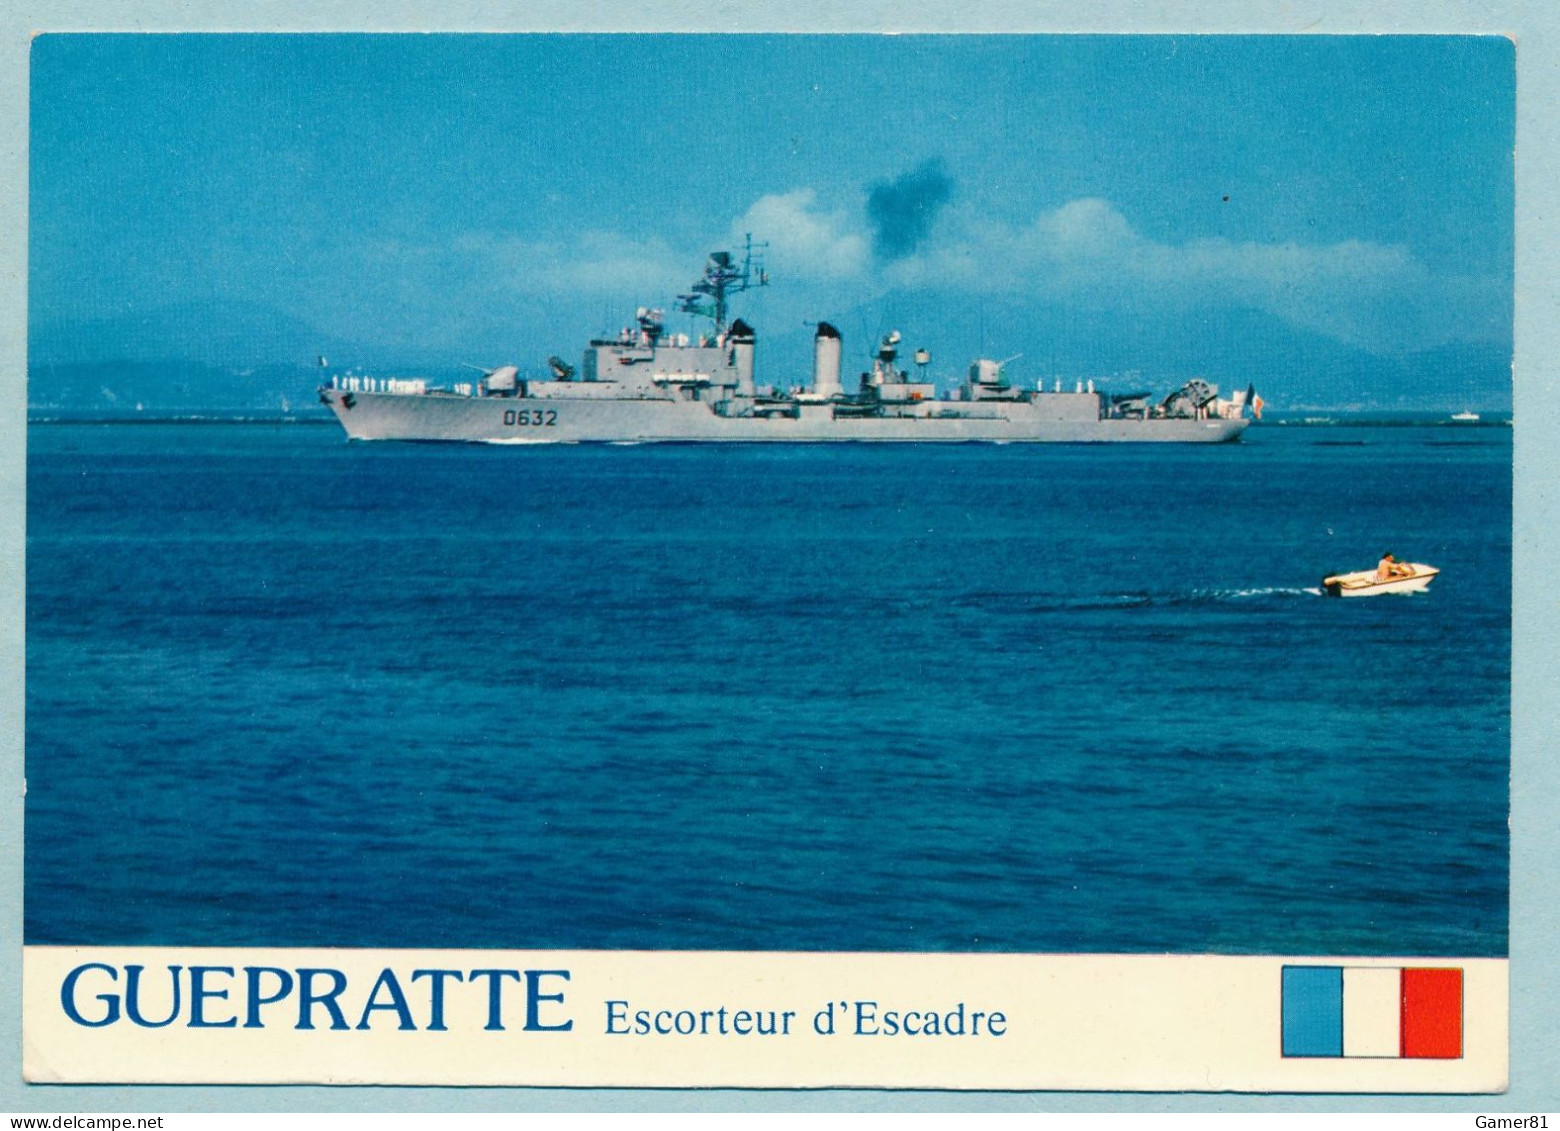 GUEPRATTE Escorteur D'Escadre 2750 Tonnes à TOULON Revue Navale 11/07/1976 Avec Le Pdt Valéry Giscard D'Estaing - Krieg